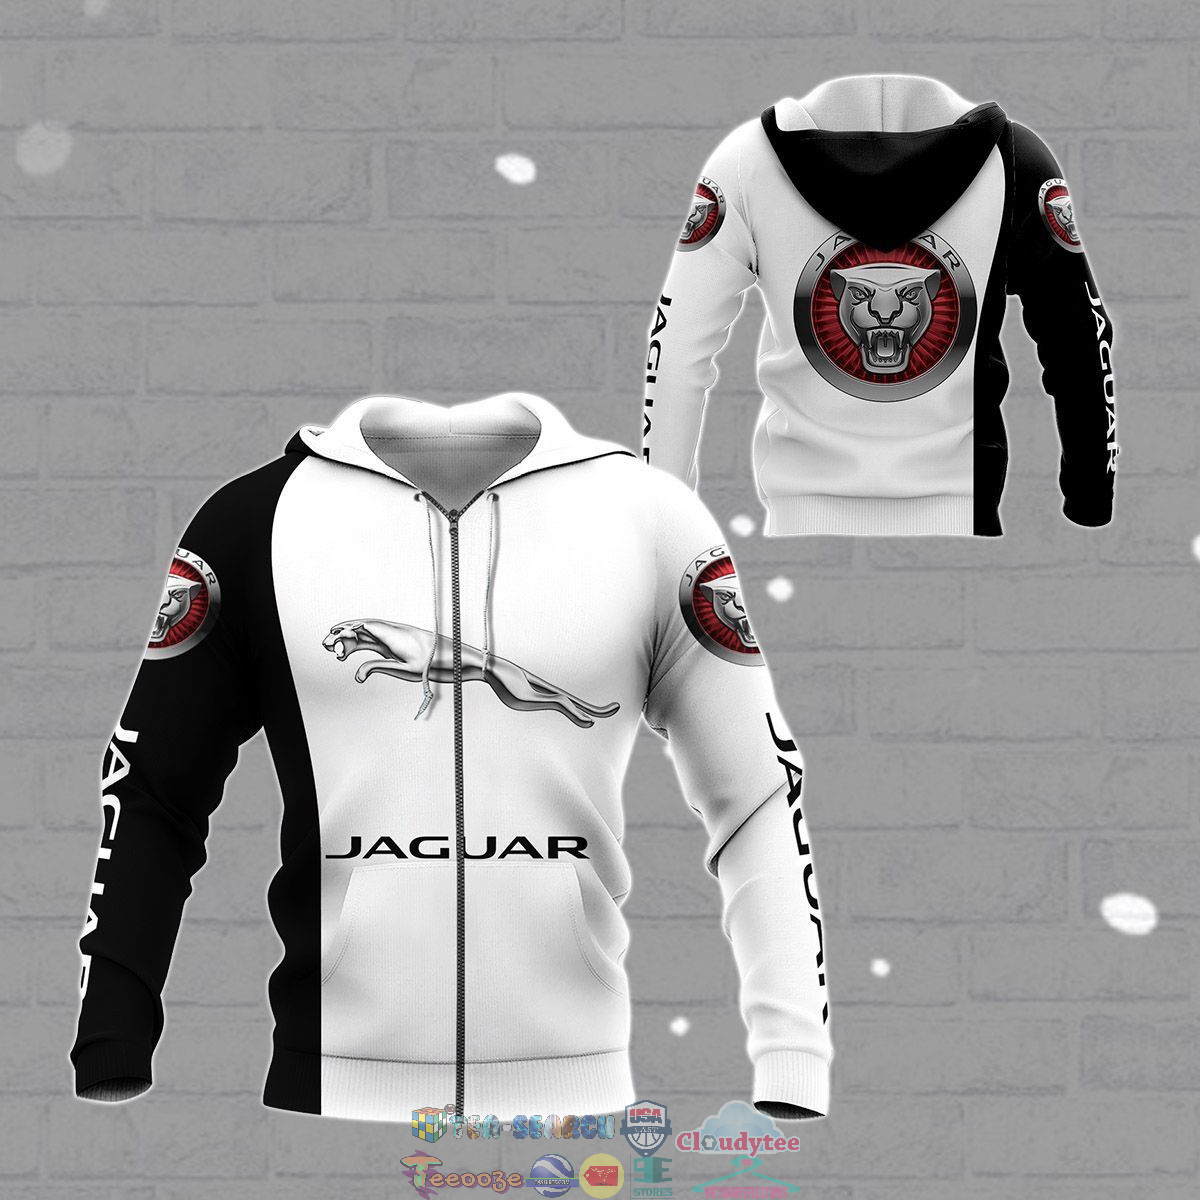 Jaguar ver 11 3D hoodie and t-shirt